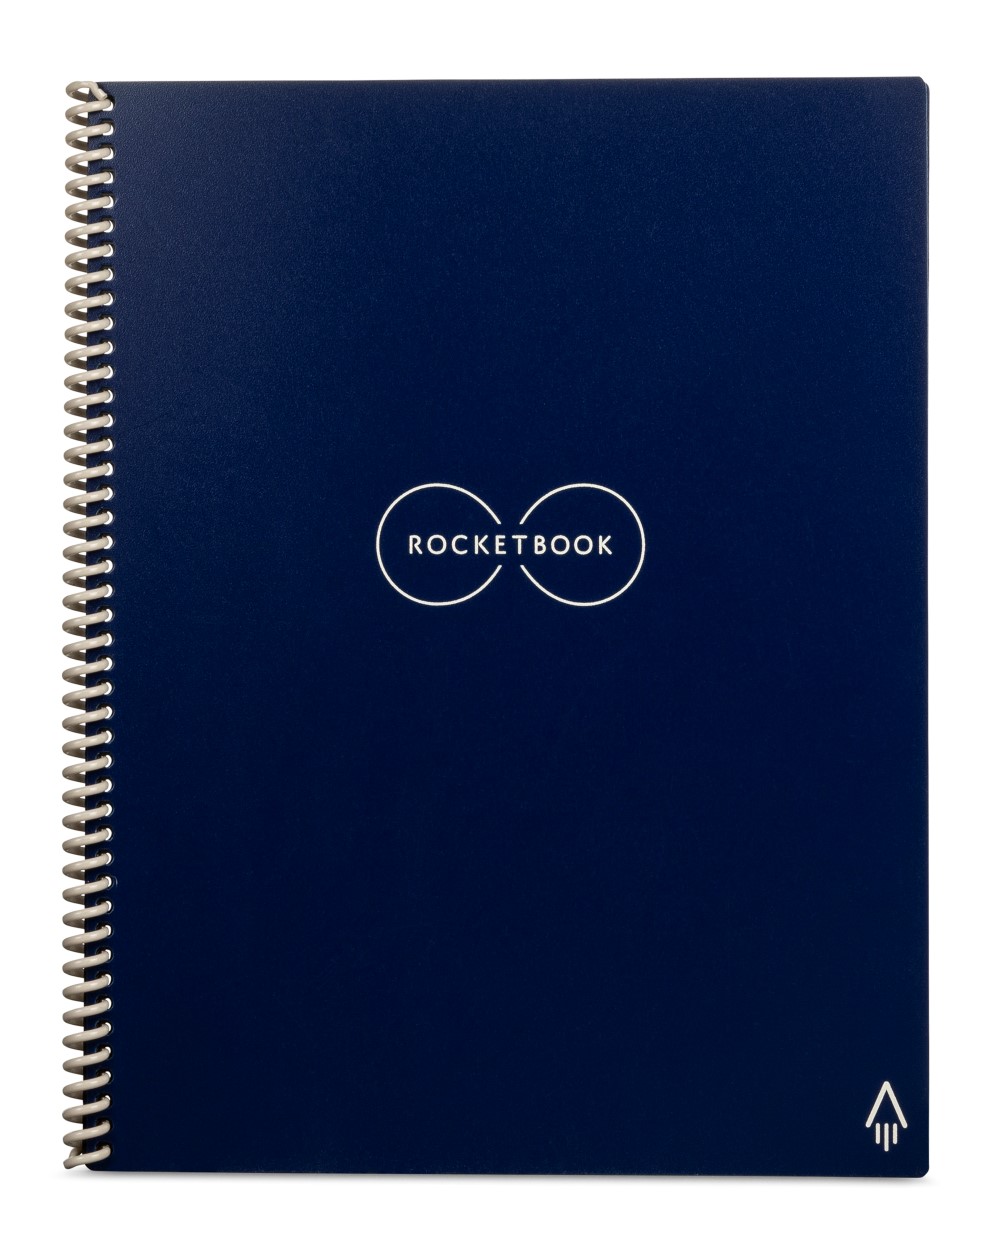 دفتر ملاحظات ذكي من روكيت بوك إيفر-لاست باللون الأزرق الداكن بمقاس ٦X٨.٨ بوصة